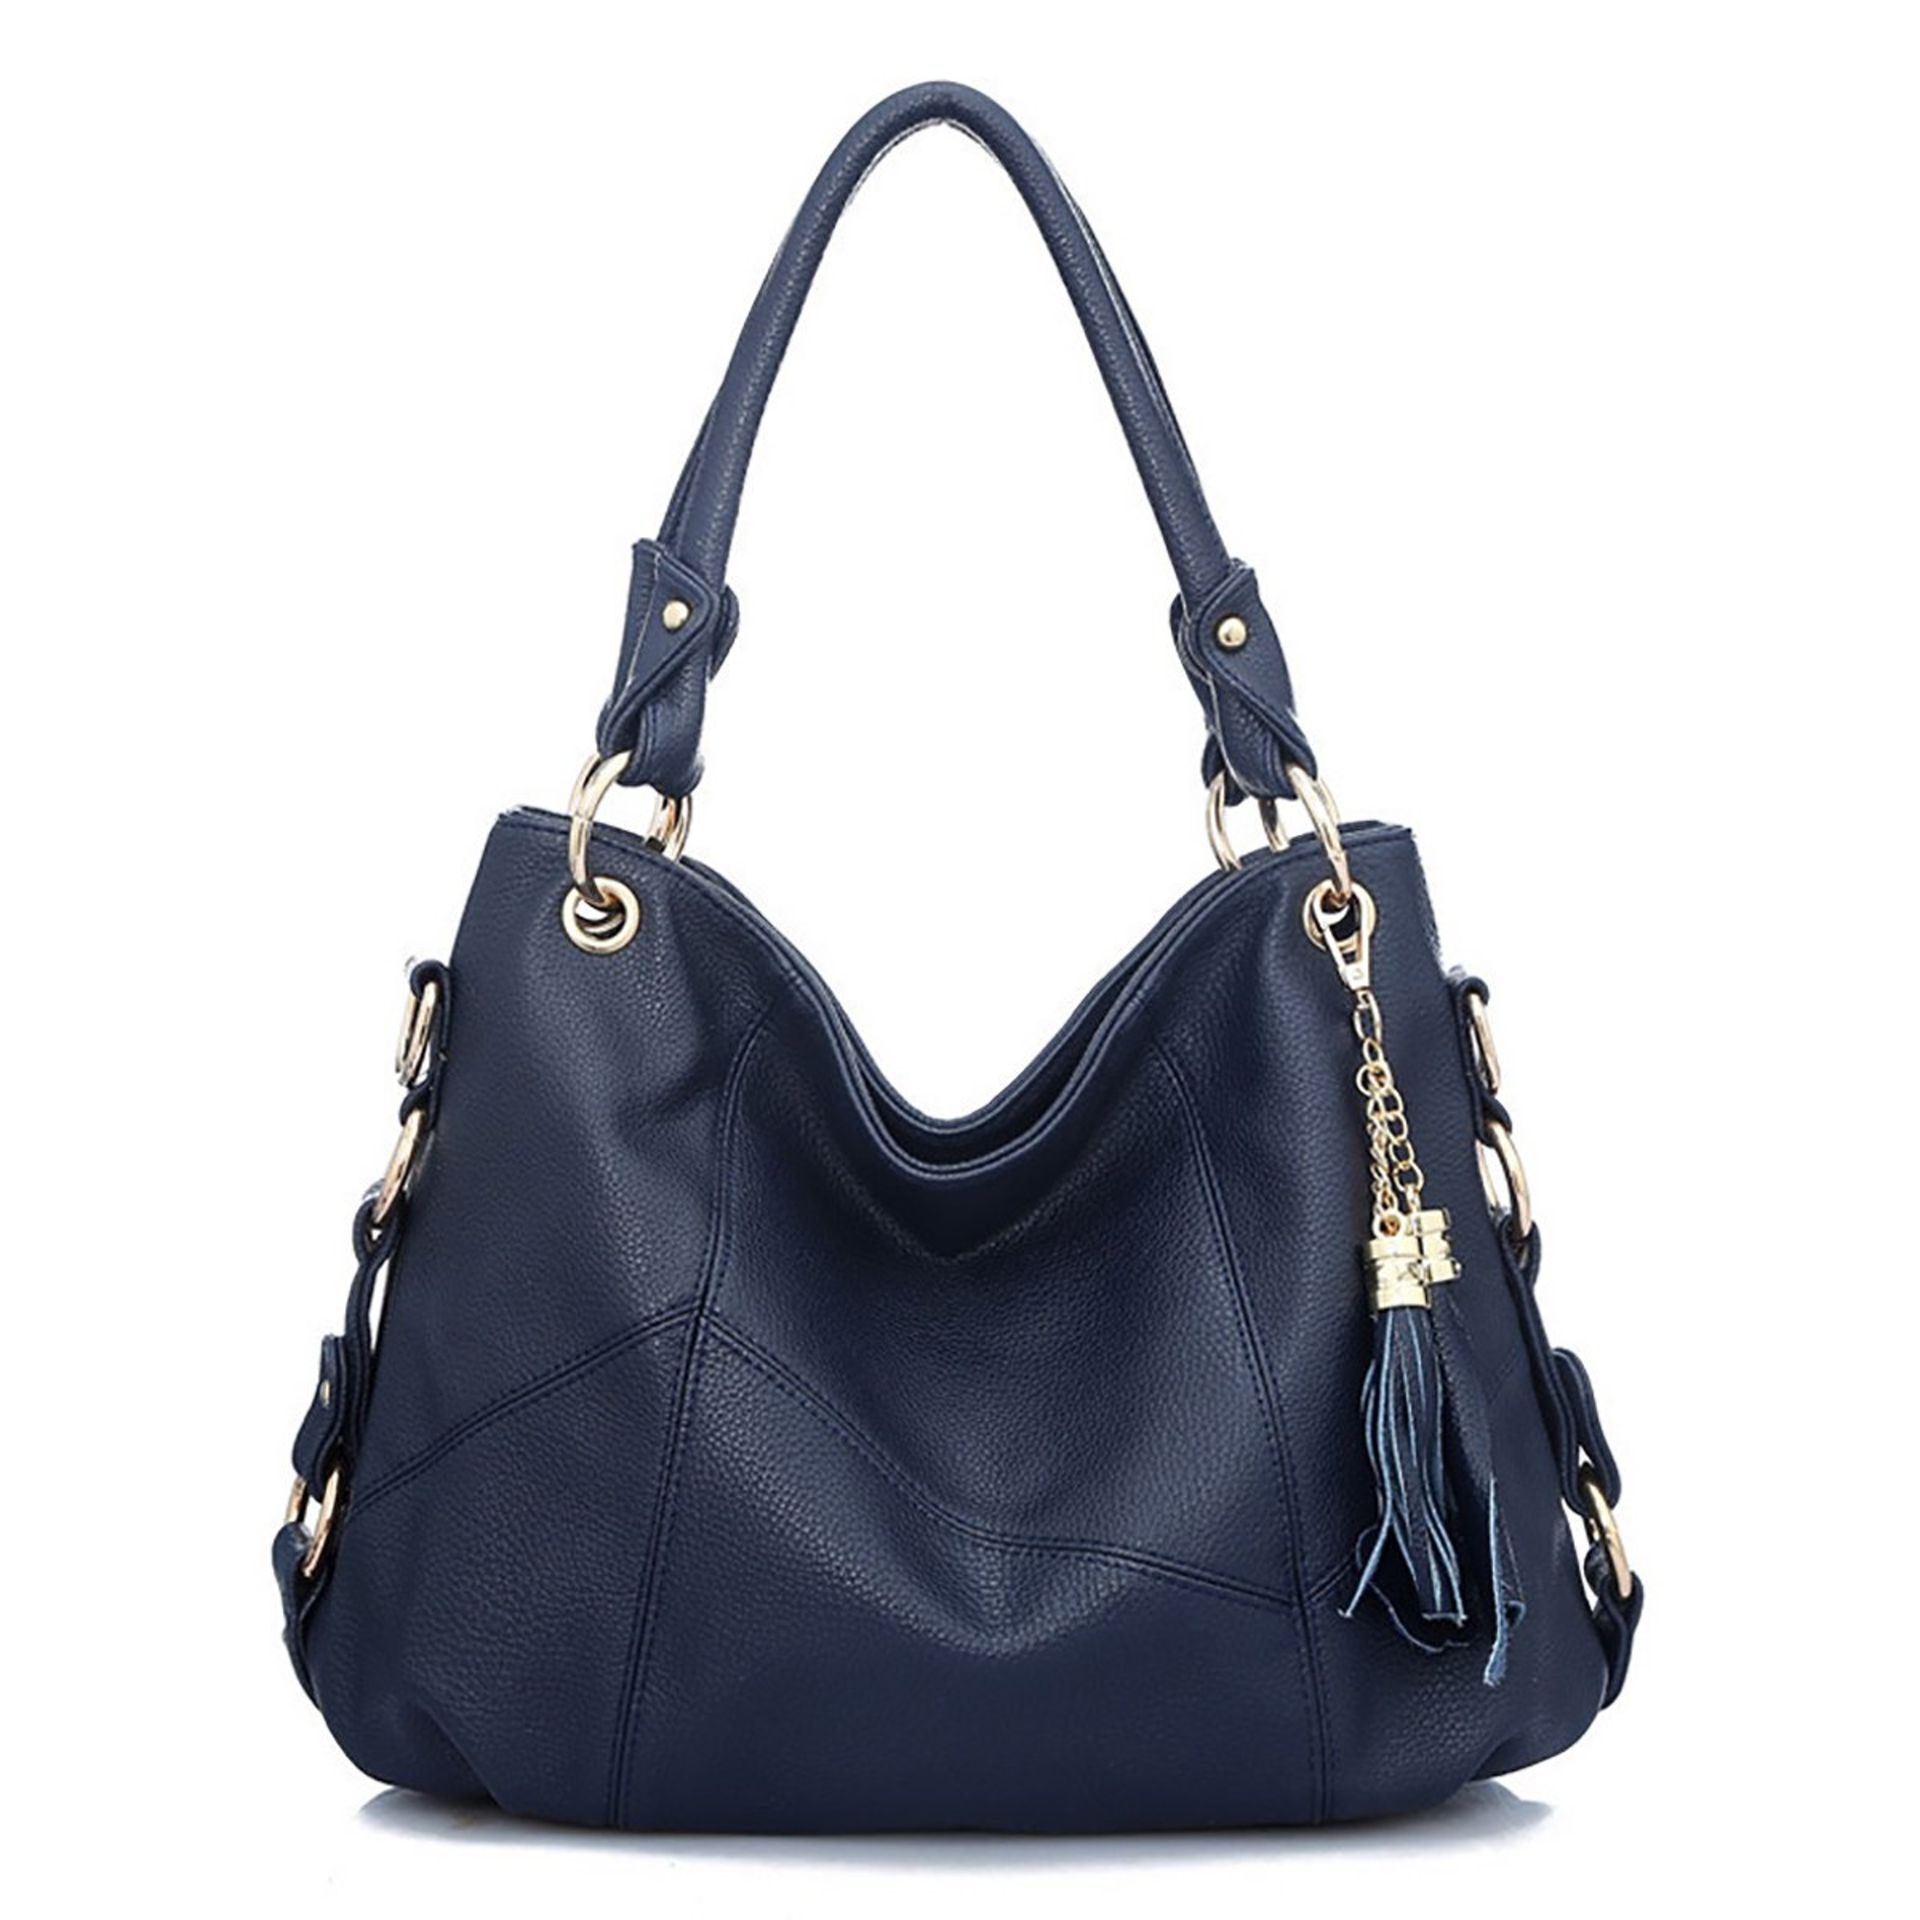 Brand New Women's Coolives Metal Ring Shoulder Strap Navy Blue Handbag RRP £54.99